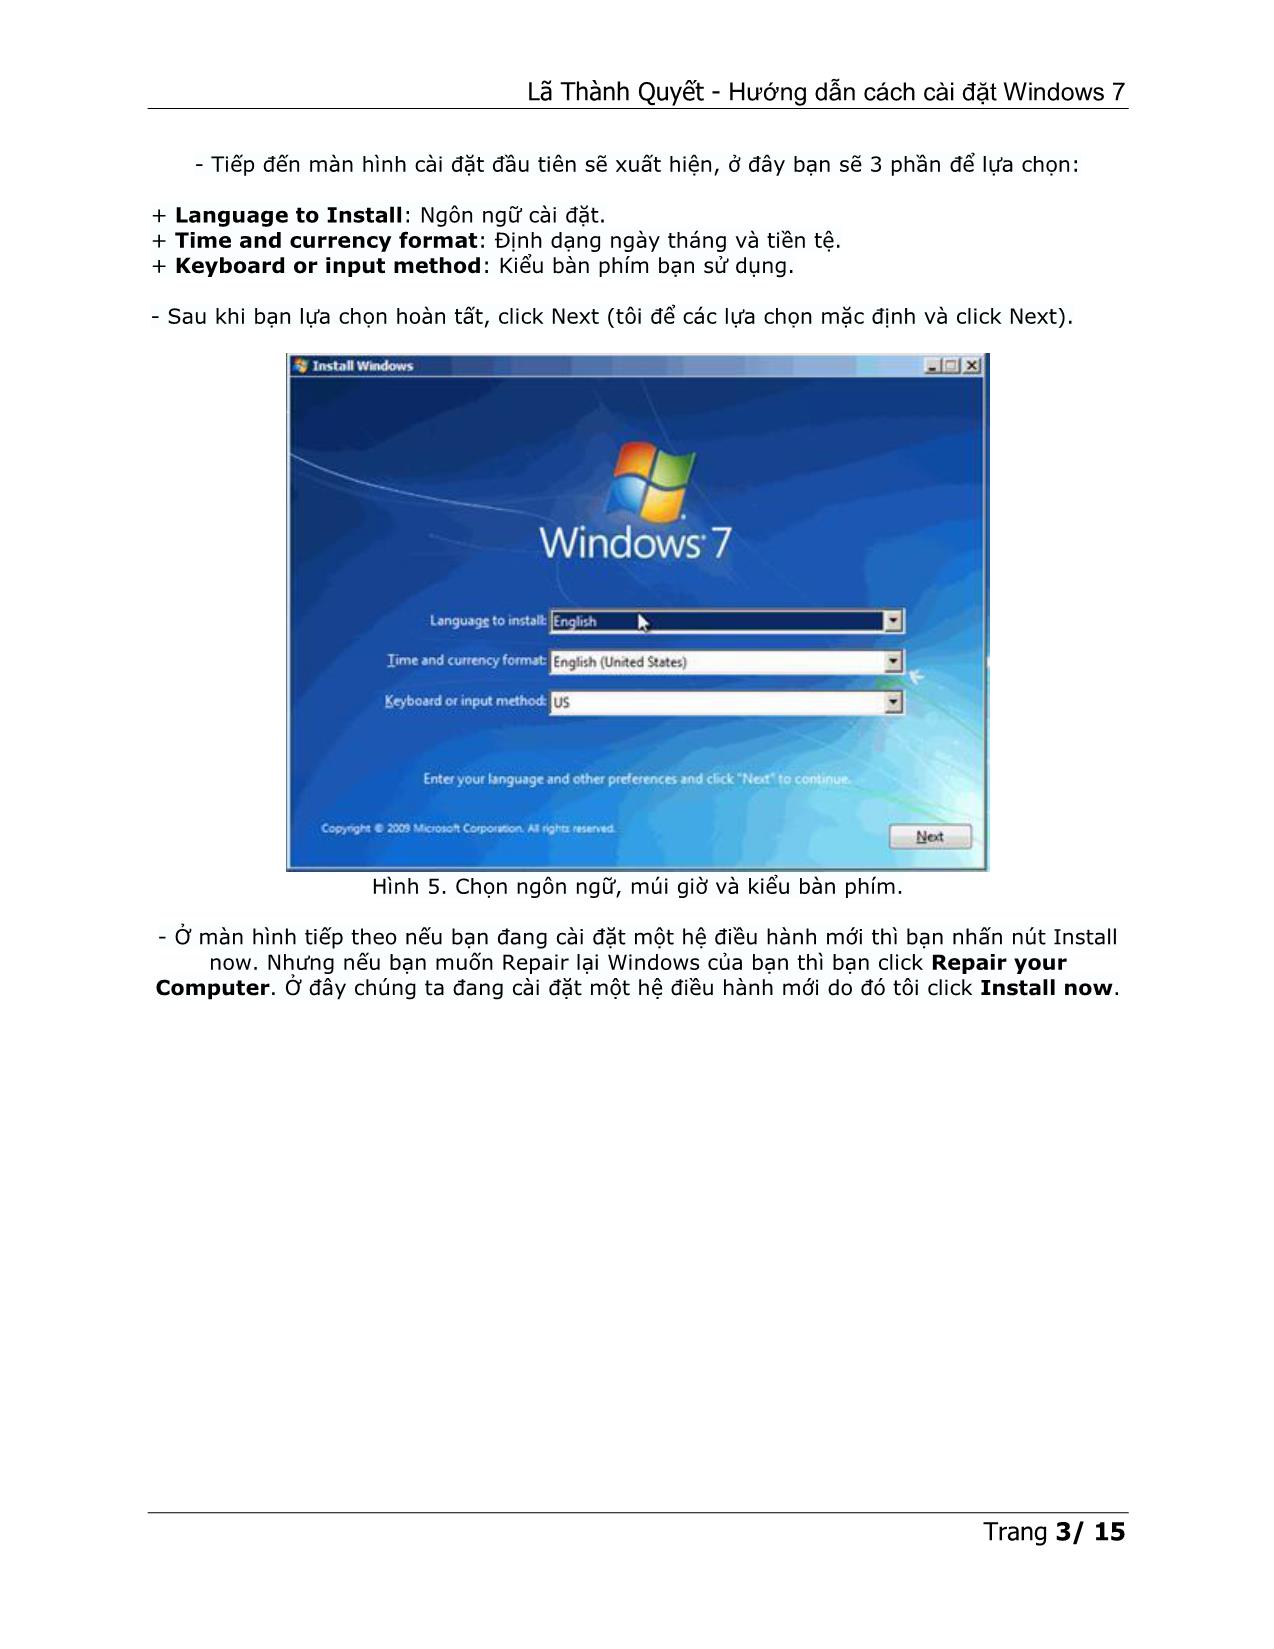 Hướng dẫn cách cài đặt Windows 7 trang 3